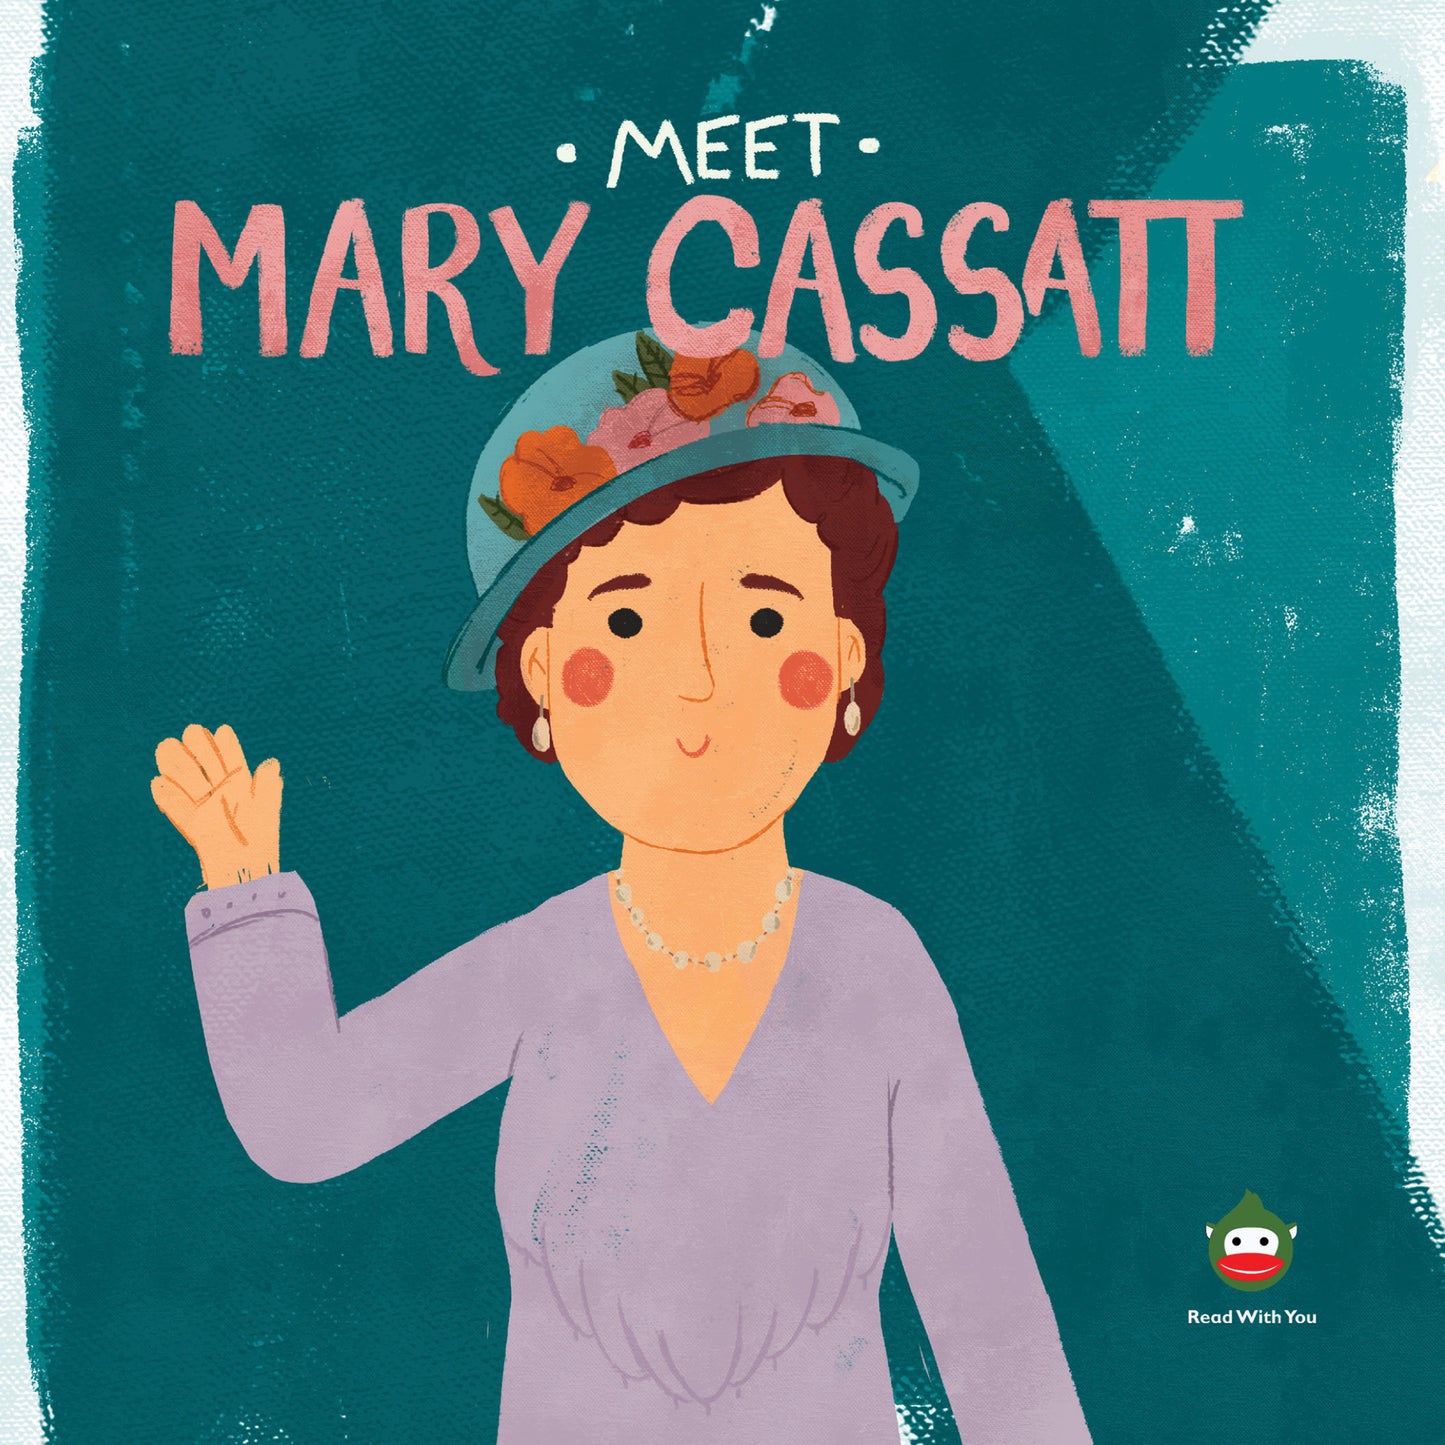 Meet Mary Cassatt